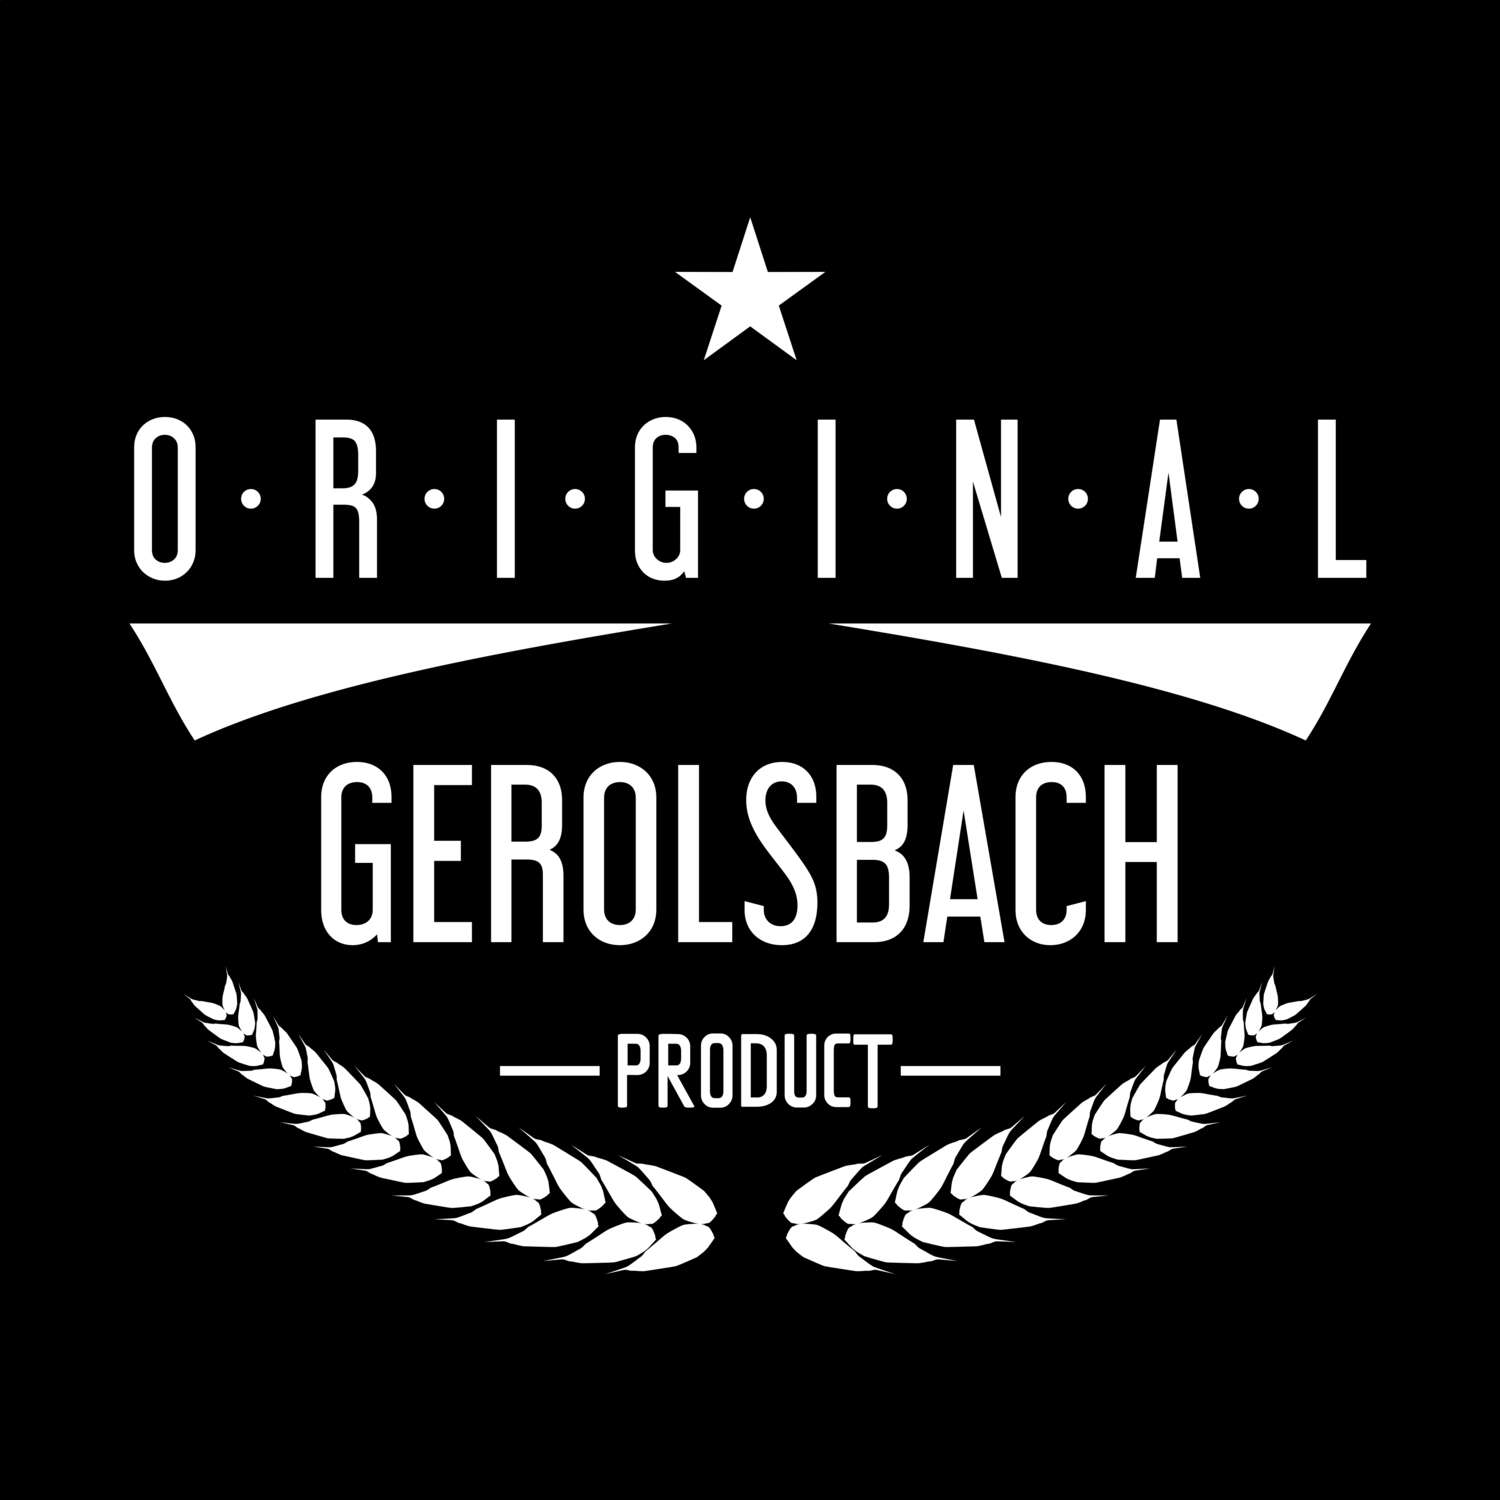 Gerolsbach T-Shirt »Original Product«